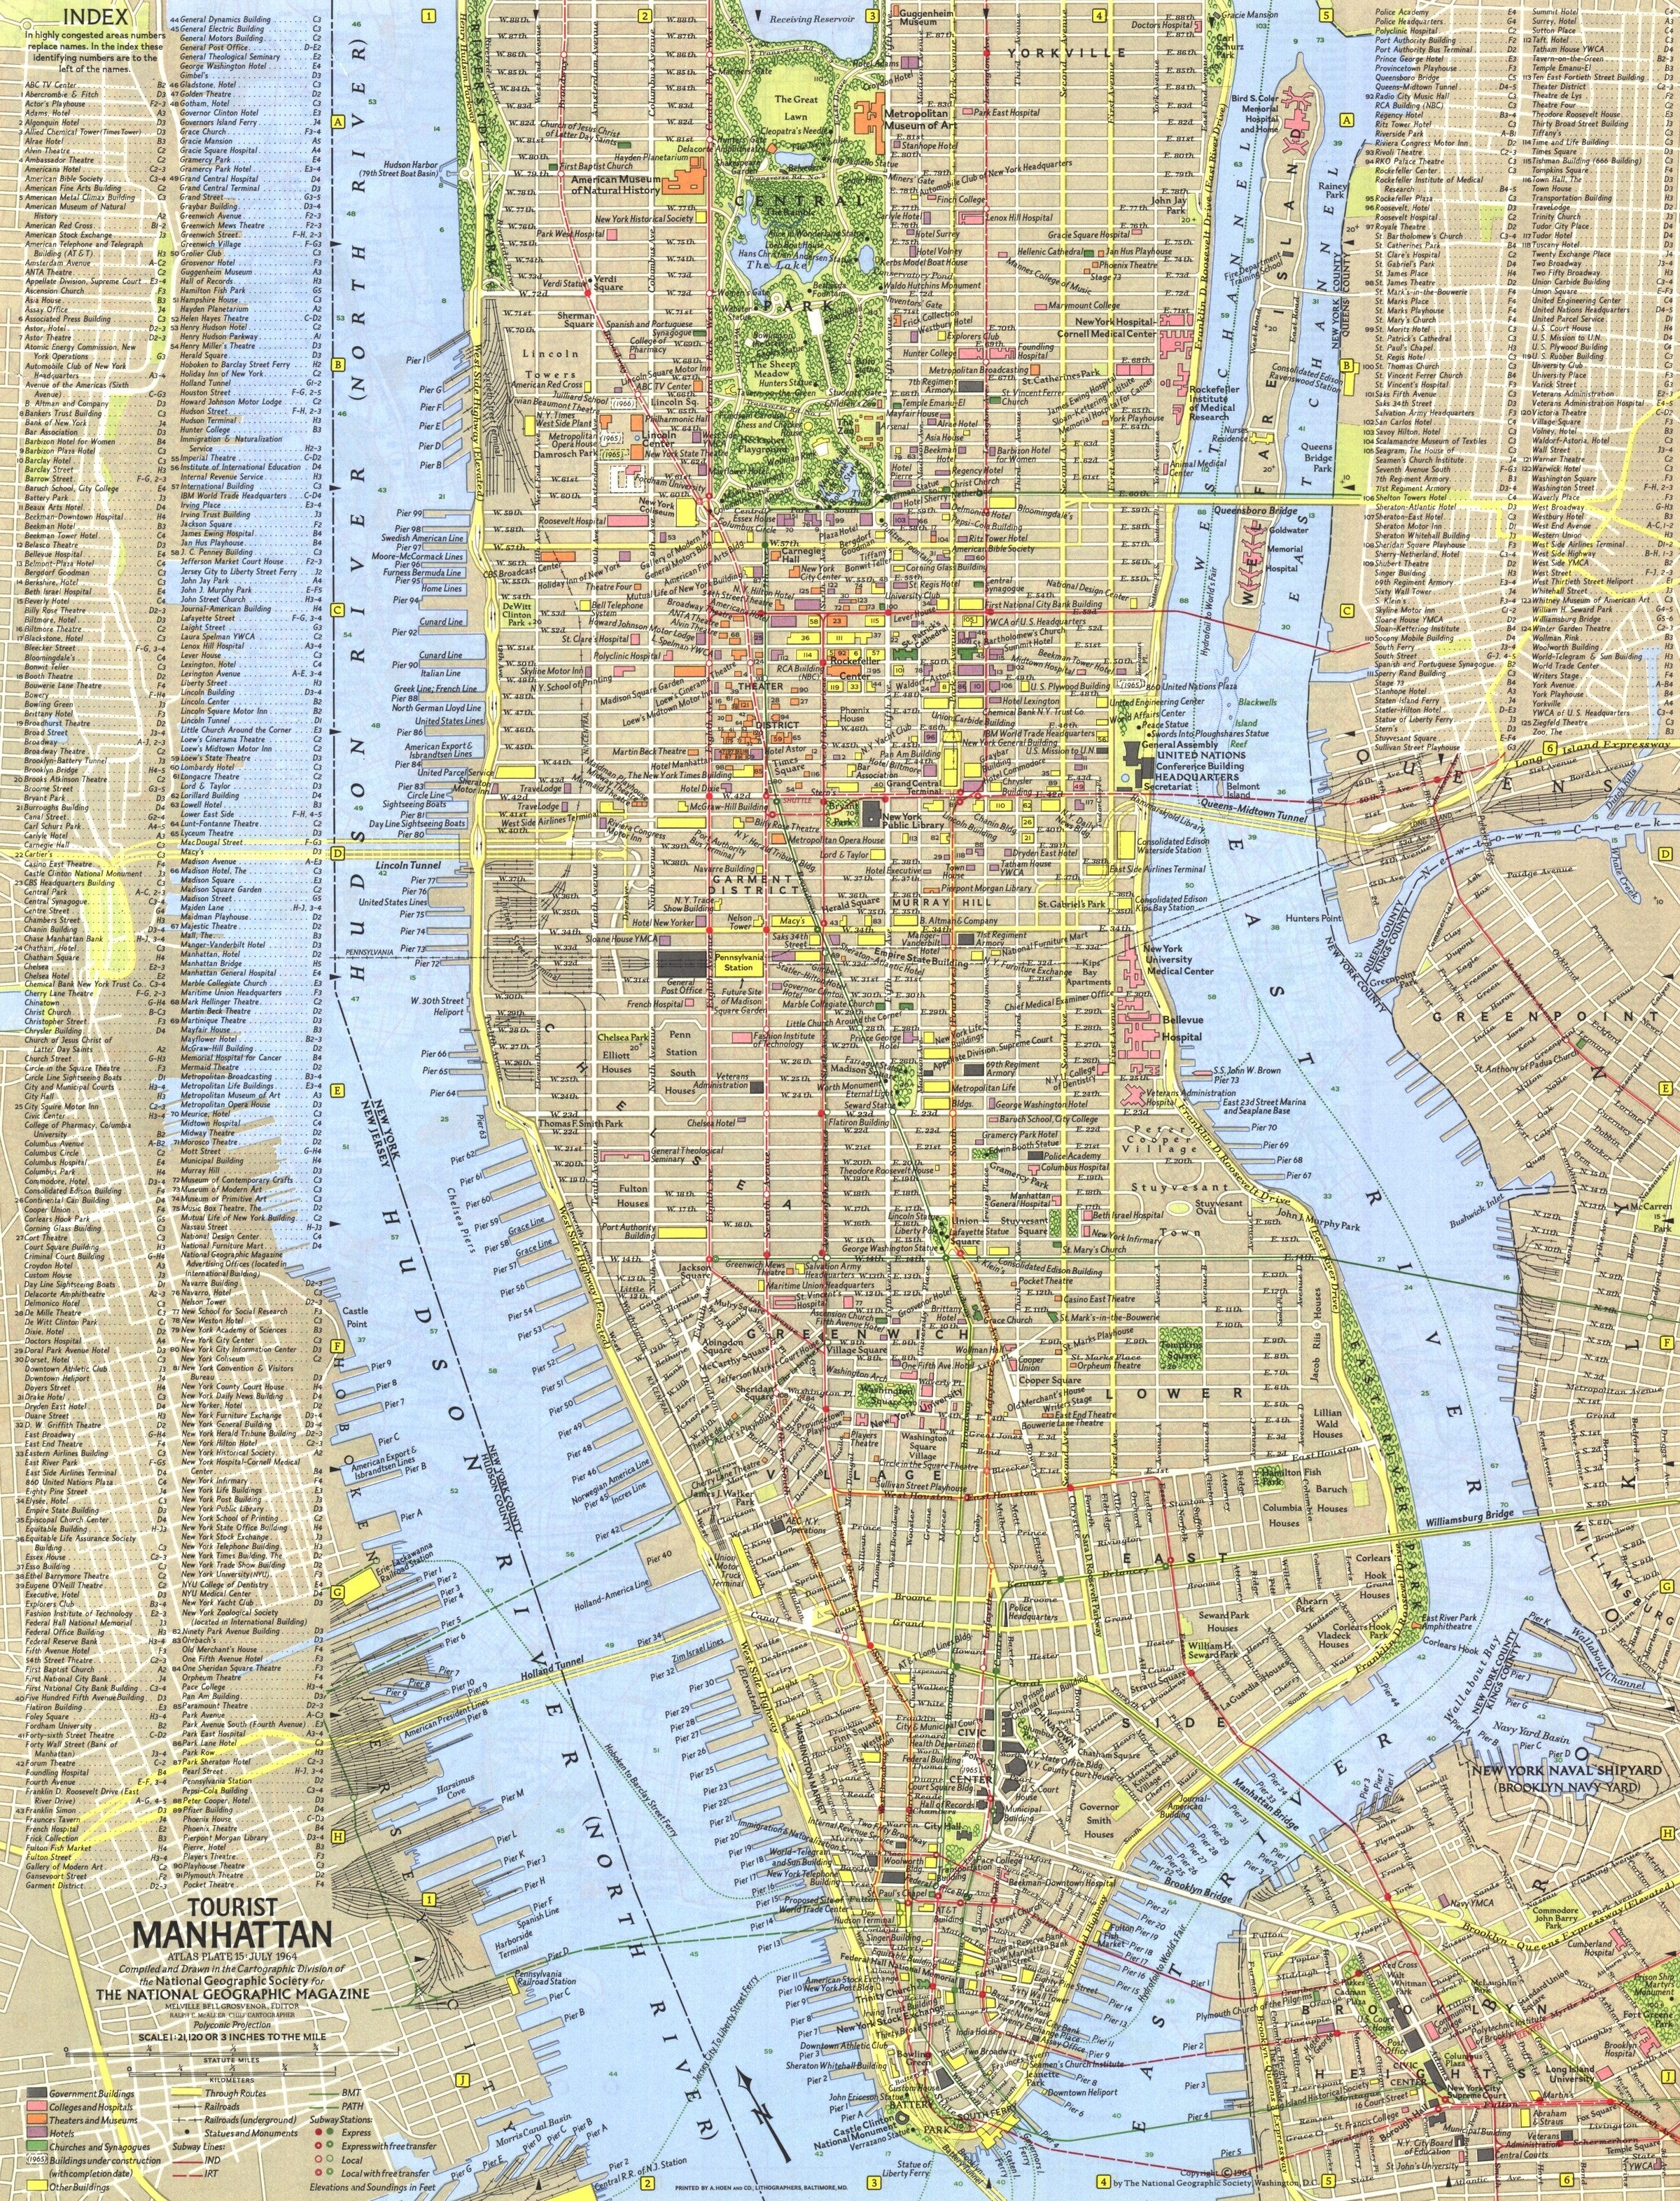 Tourist Manhattan Map 1964 | Maps.com.com